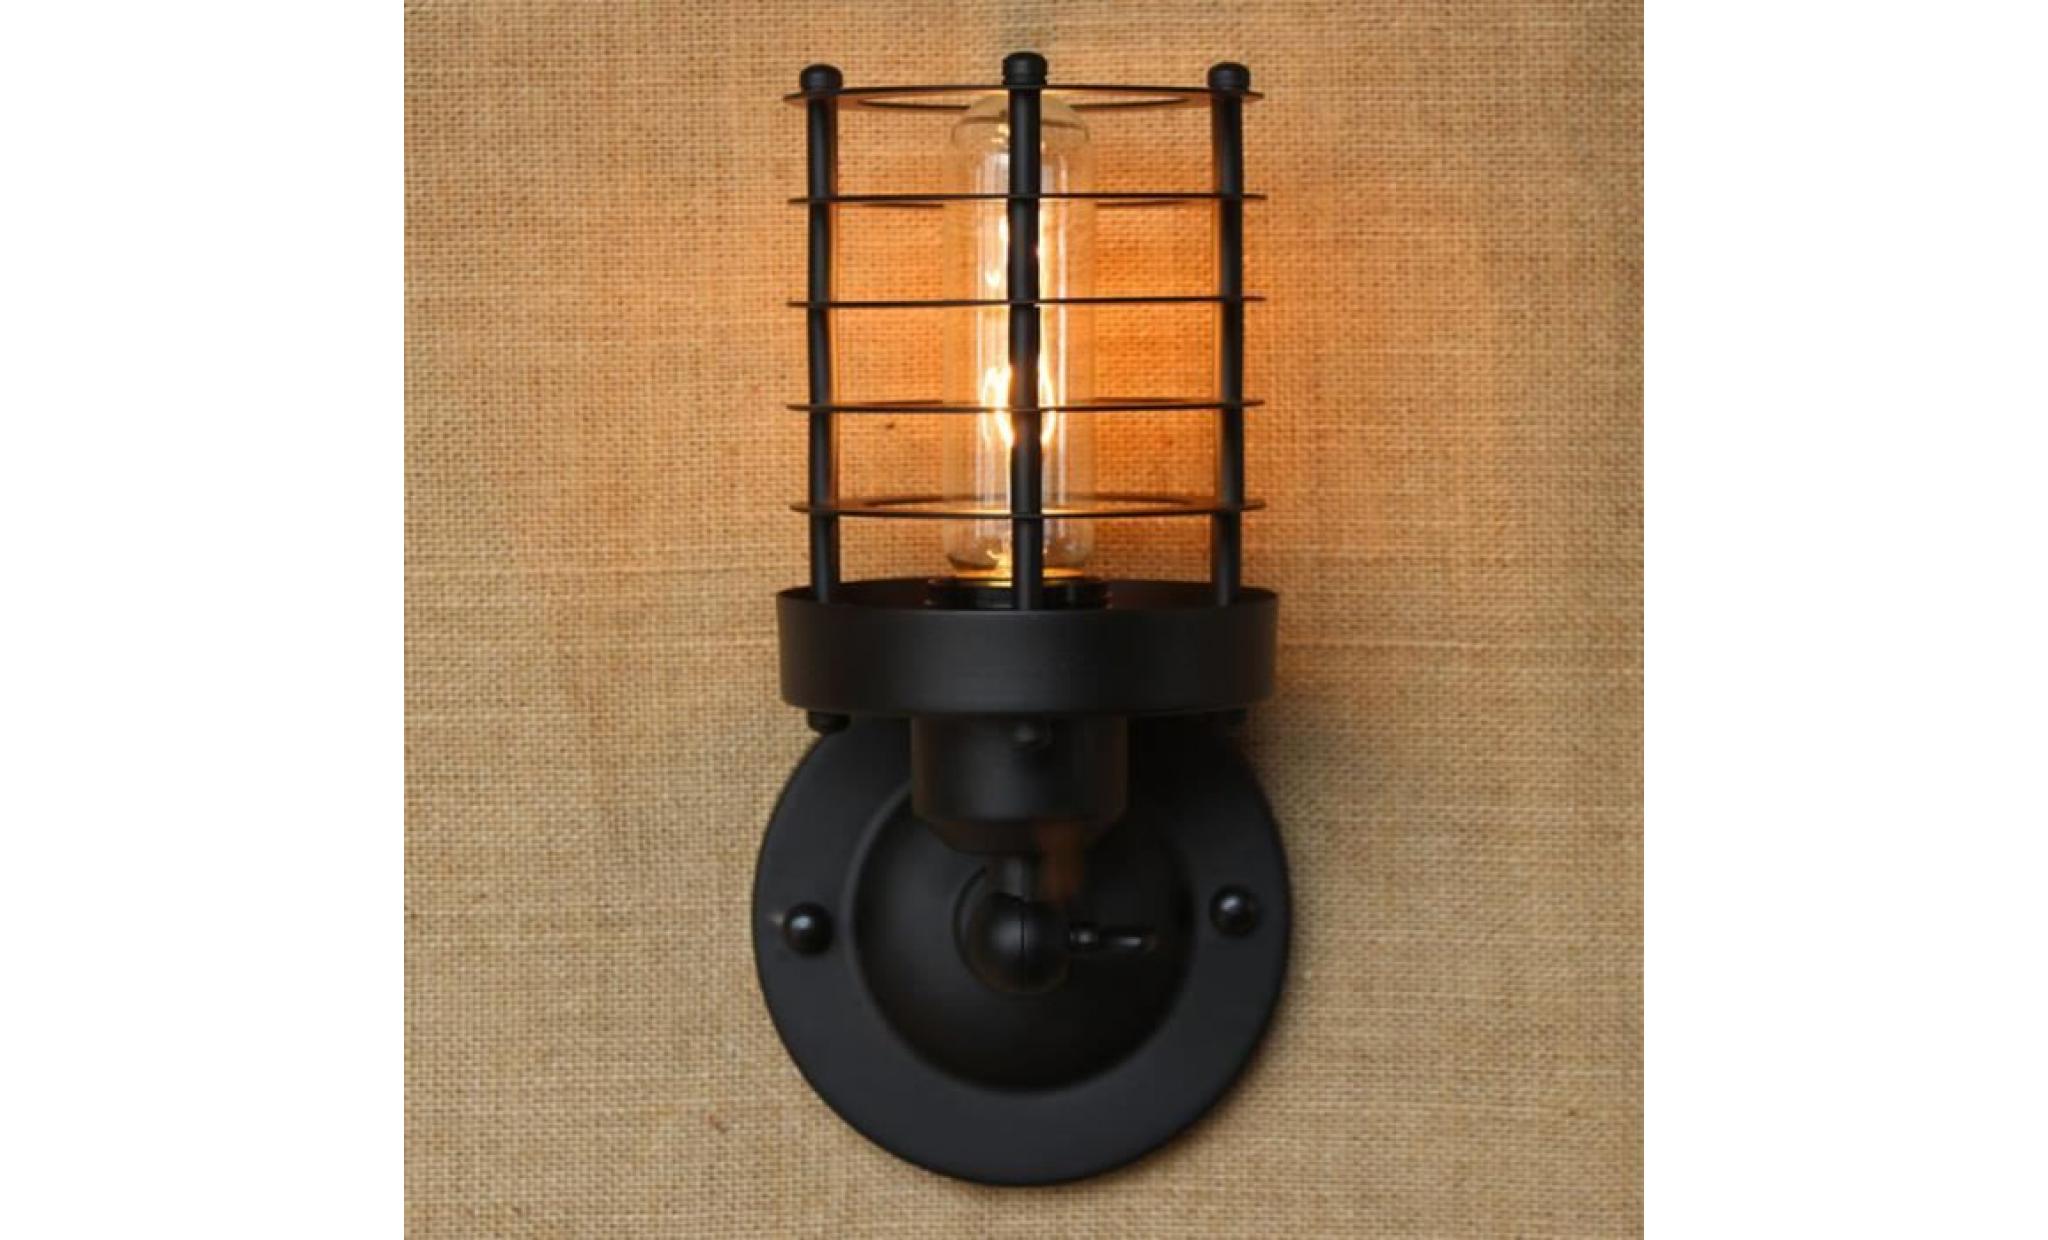 rétro vintage applique lampe murale industrielle intérieure mur de feu rh simple lustre rustique fixation de lampe en fer #1 pas cher